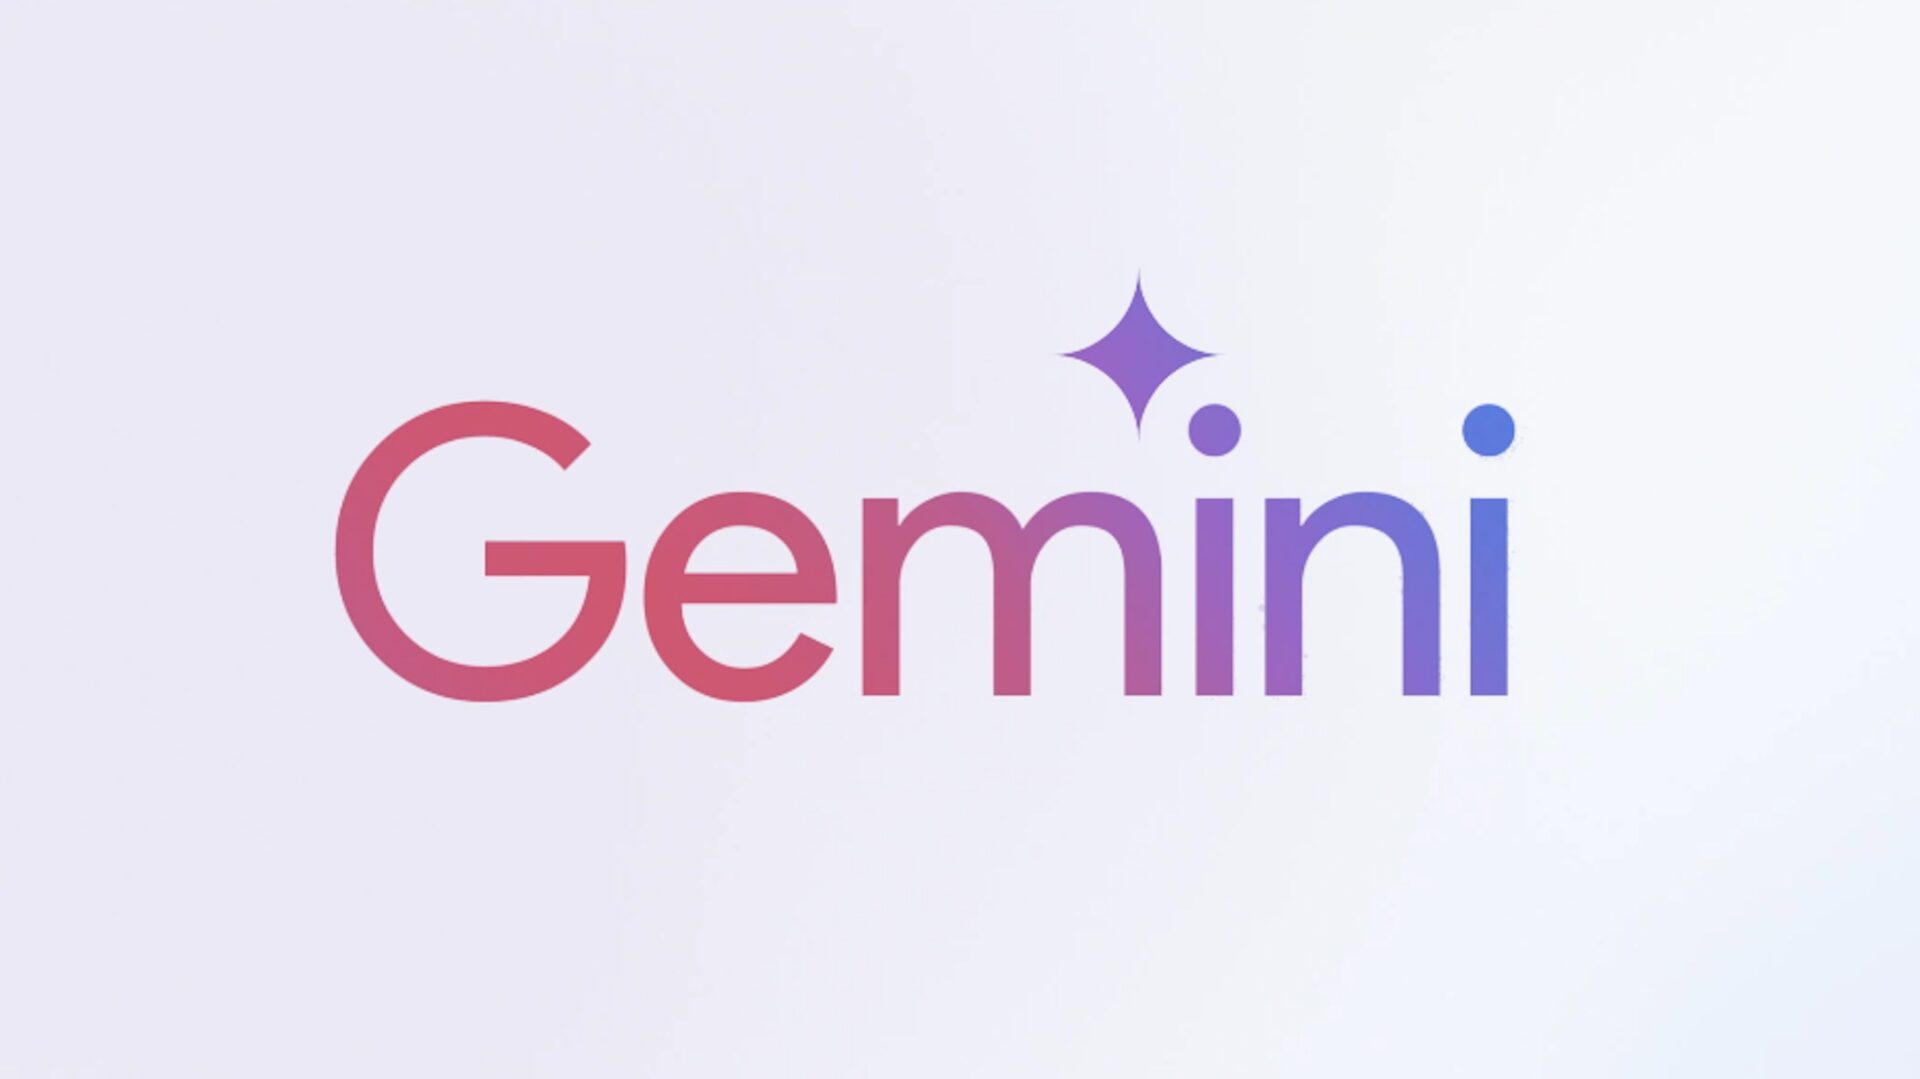 Bard skifter navn til Gemini